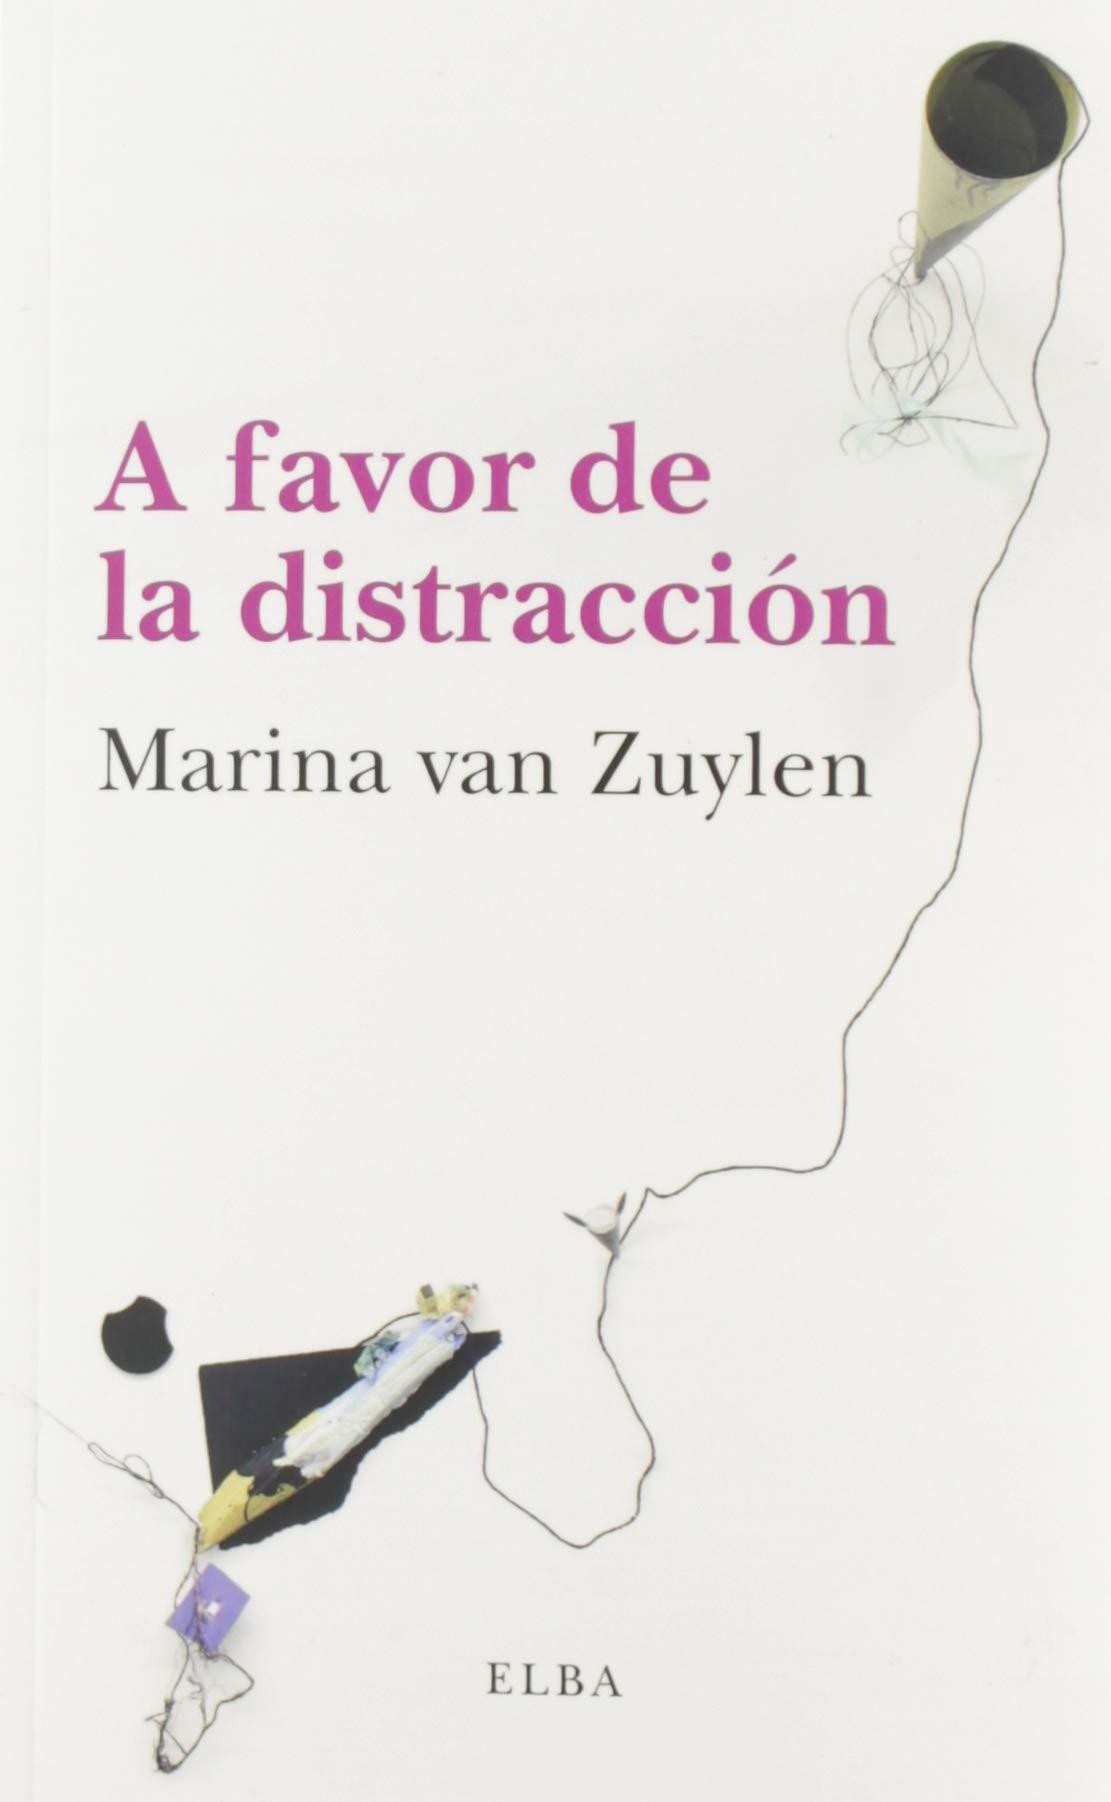 'A favor de la distracción', Marina van Zuylen / ELBA